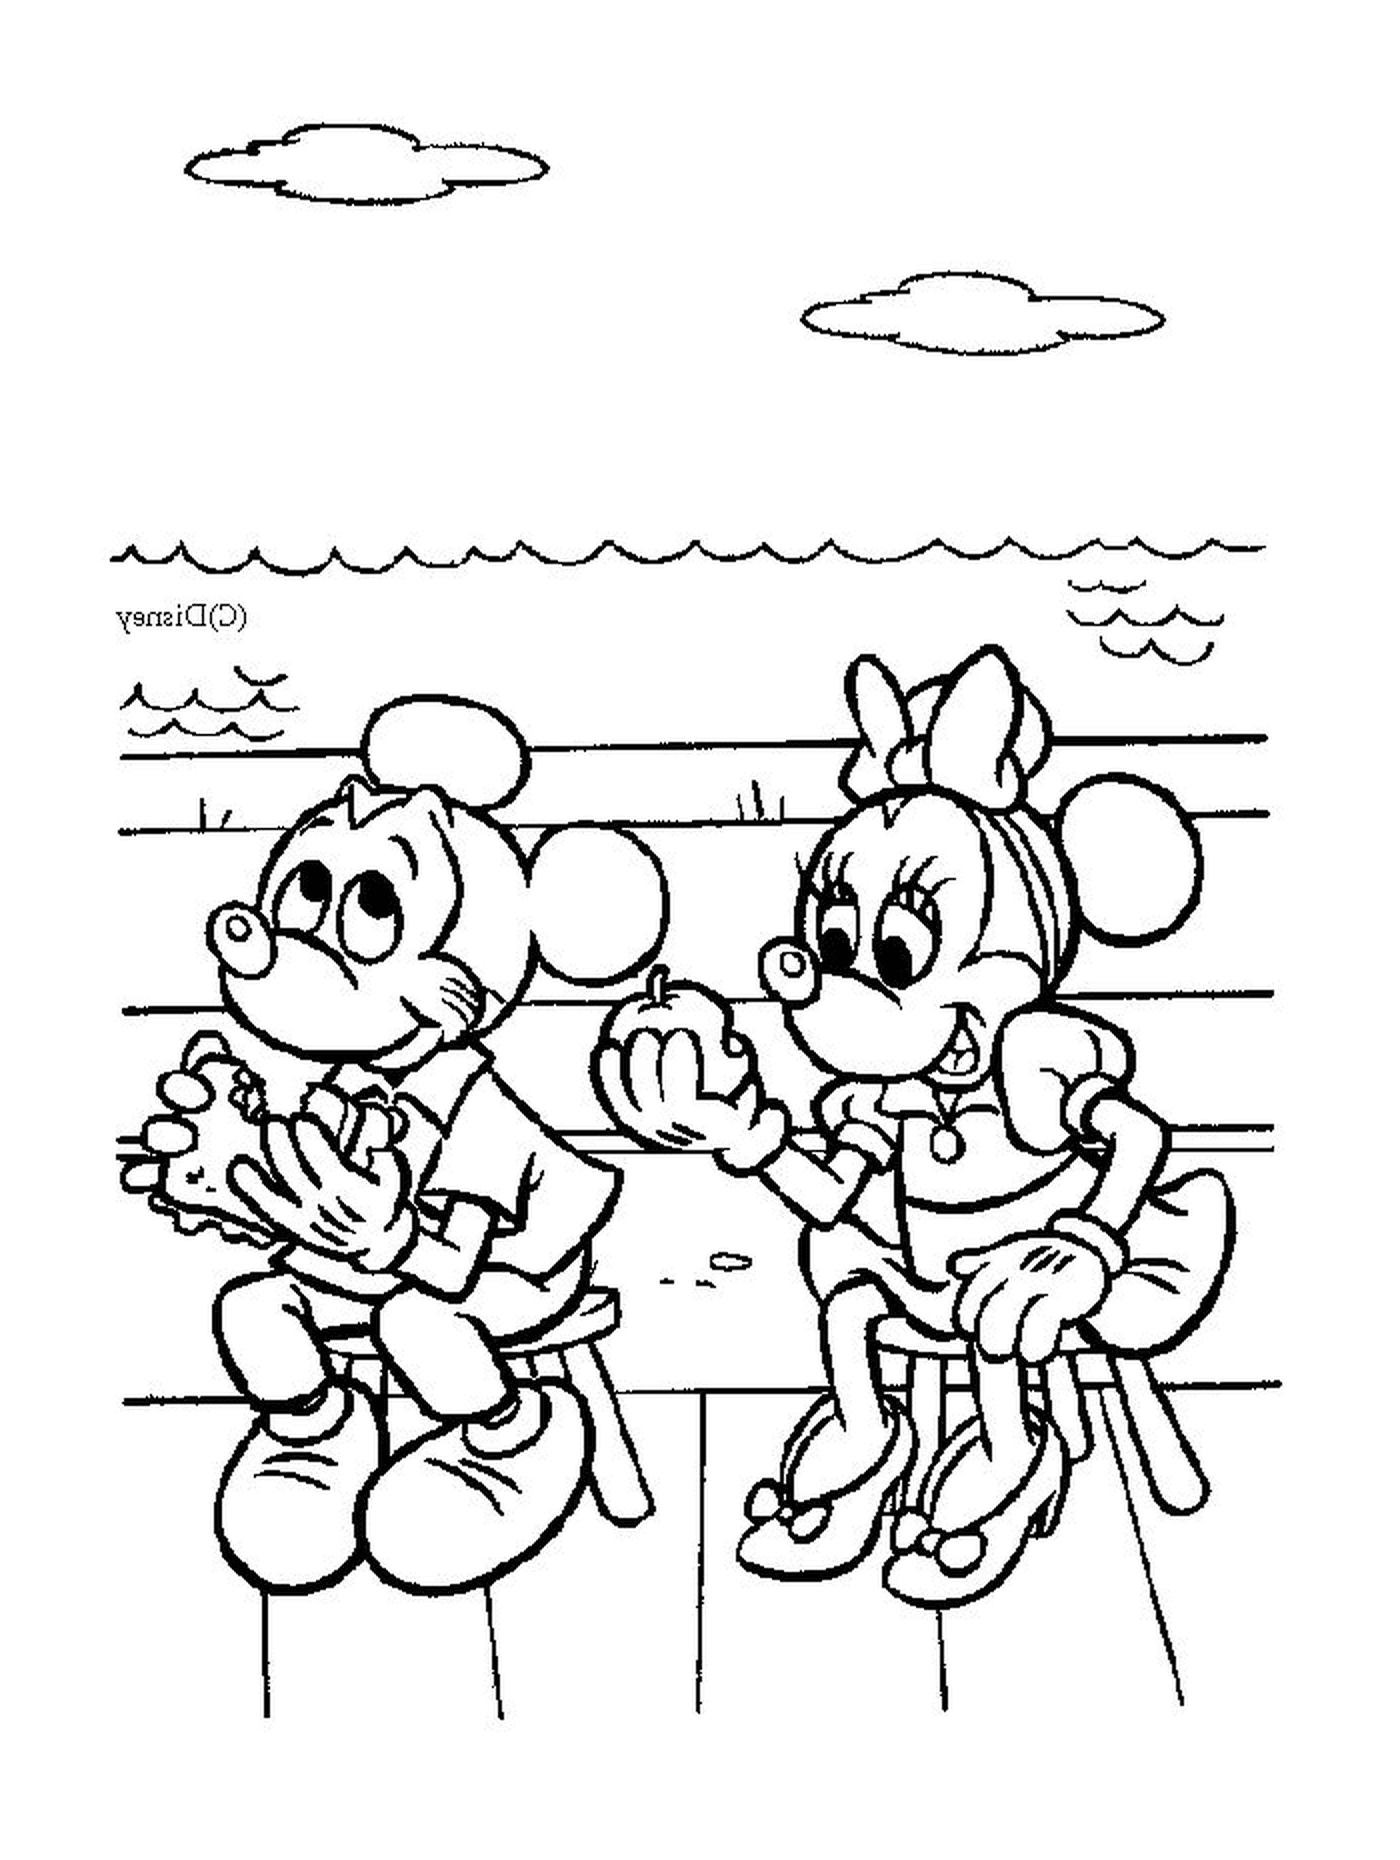   Mickey Mouse et Minnie Mouse assis sur un banc 